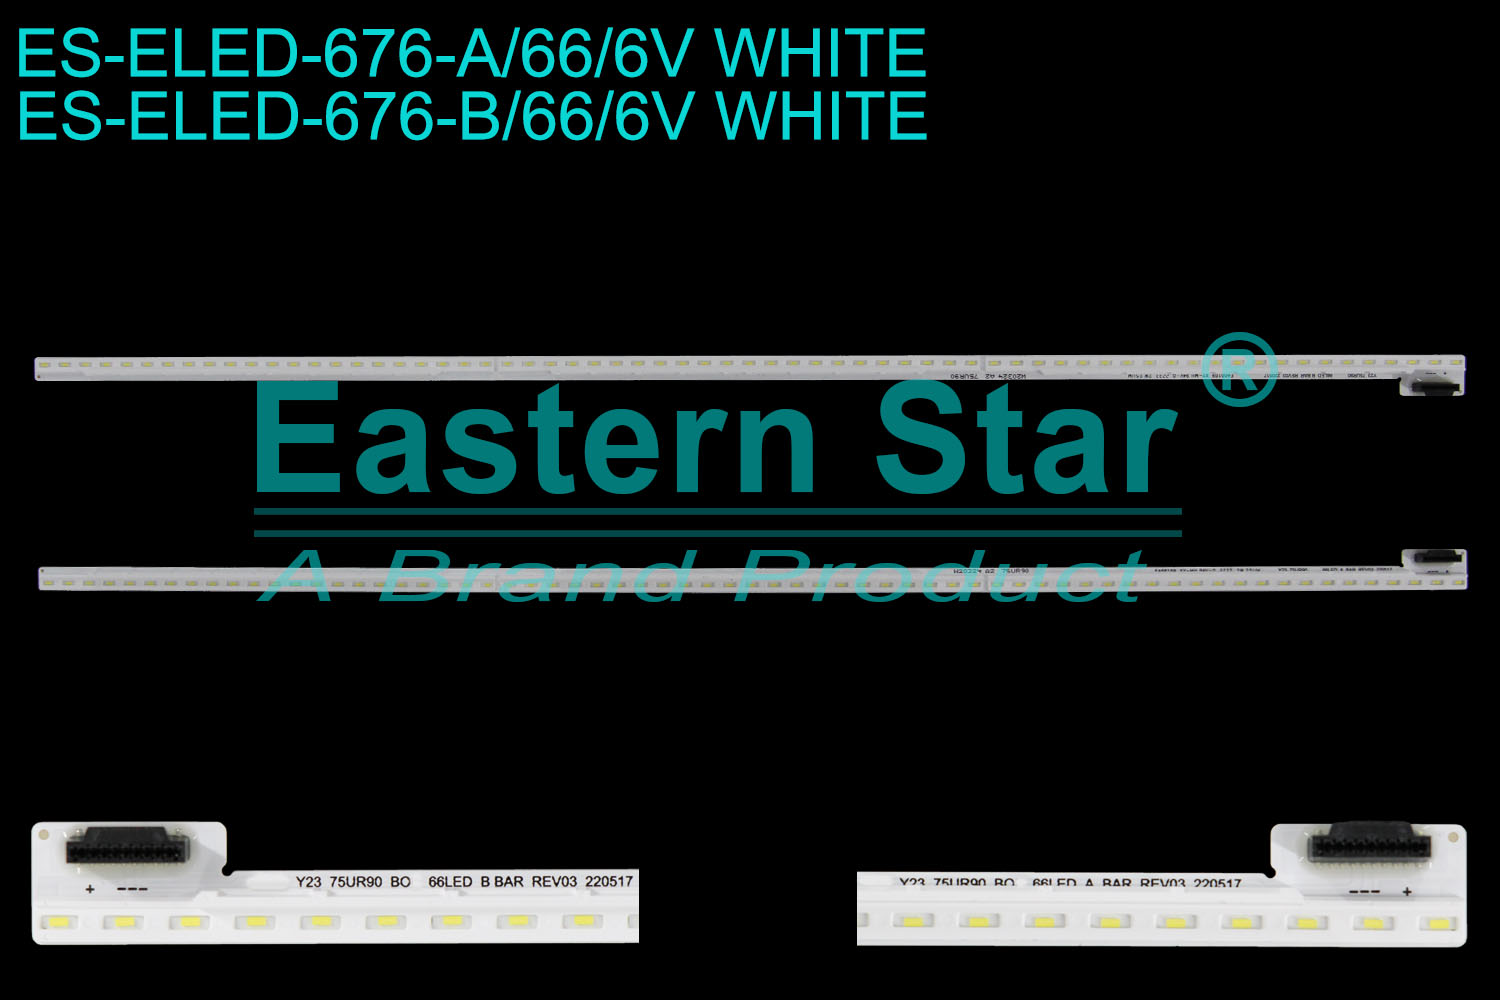 ES-ELED-676 ELED/EDGE TV backlight use for 75'' Lg A:Y23_75UR90_BOE_66LED_A BAR_REV03_220517 2233 2W 25UM W20324 A2 75UR90 B:Y23_75UR90_BOE_66LED_B BAR_REV03_220517 2233 2W 25UM W20324 A2 75UR90  LED STRIPS(/)